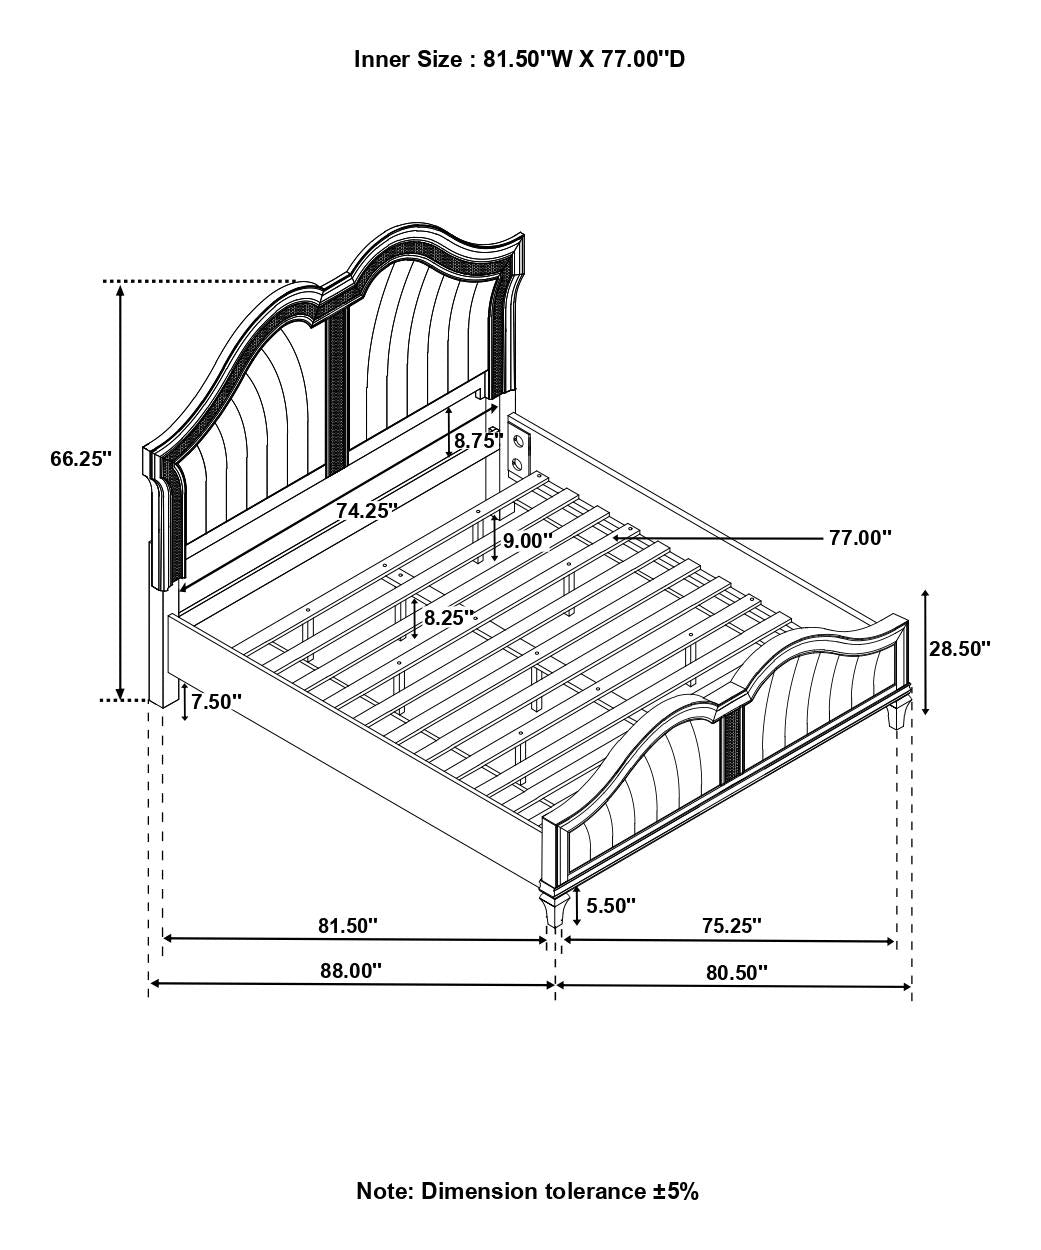 Evangeline Tufted Upholstered Platform Eastern King Bed Ivory/Silver Oak - 223391KE - Bien Home Furniture &amp; Electronics